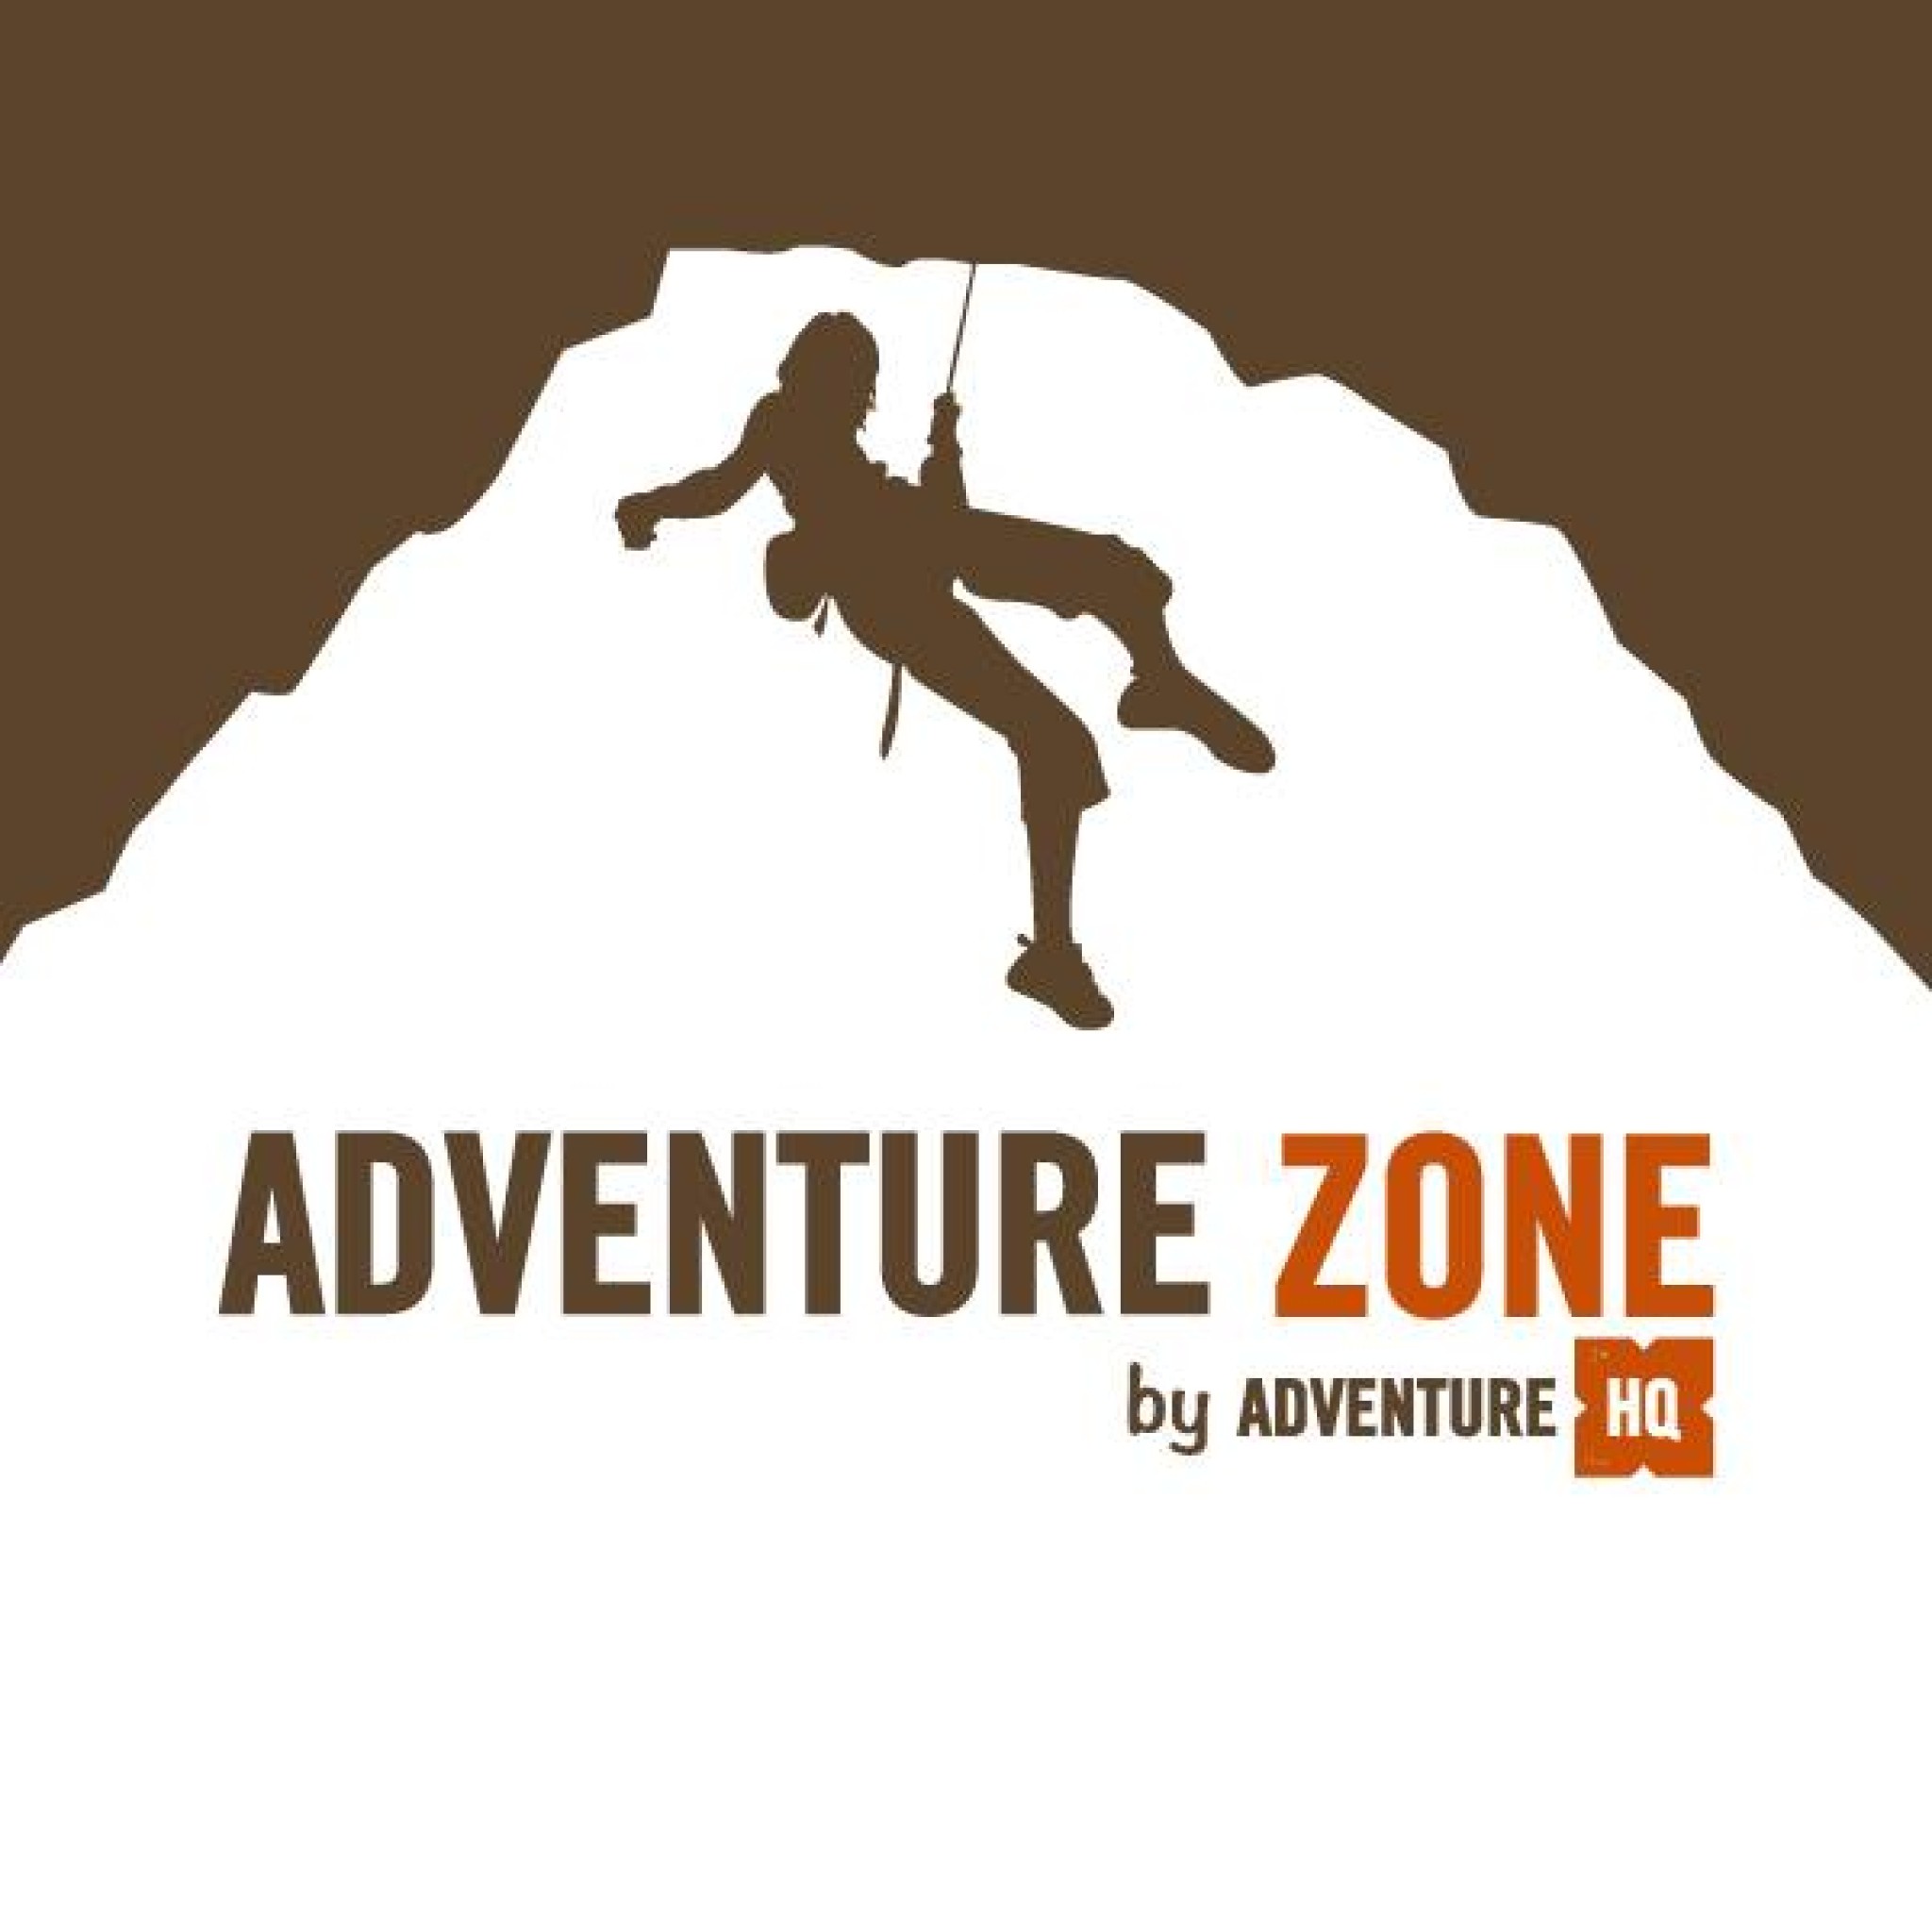 Adventure Zone - Galleria Mall Al Wasl